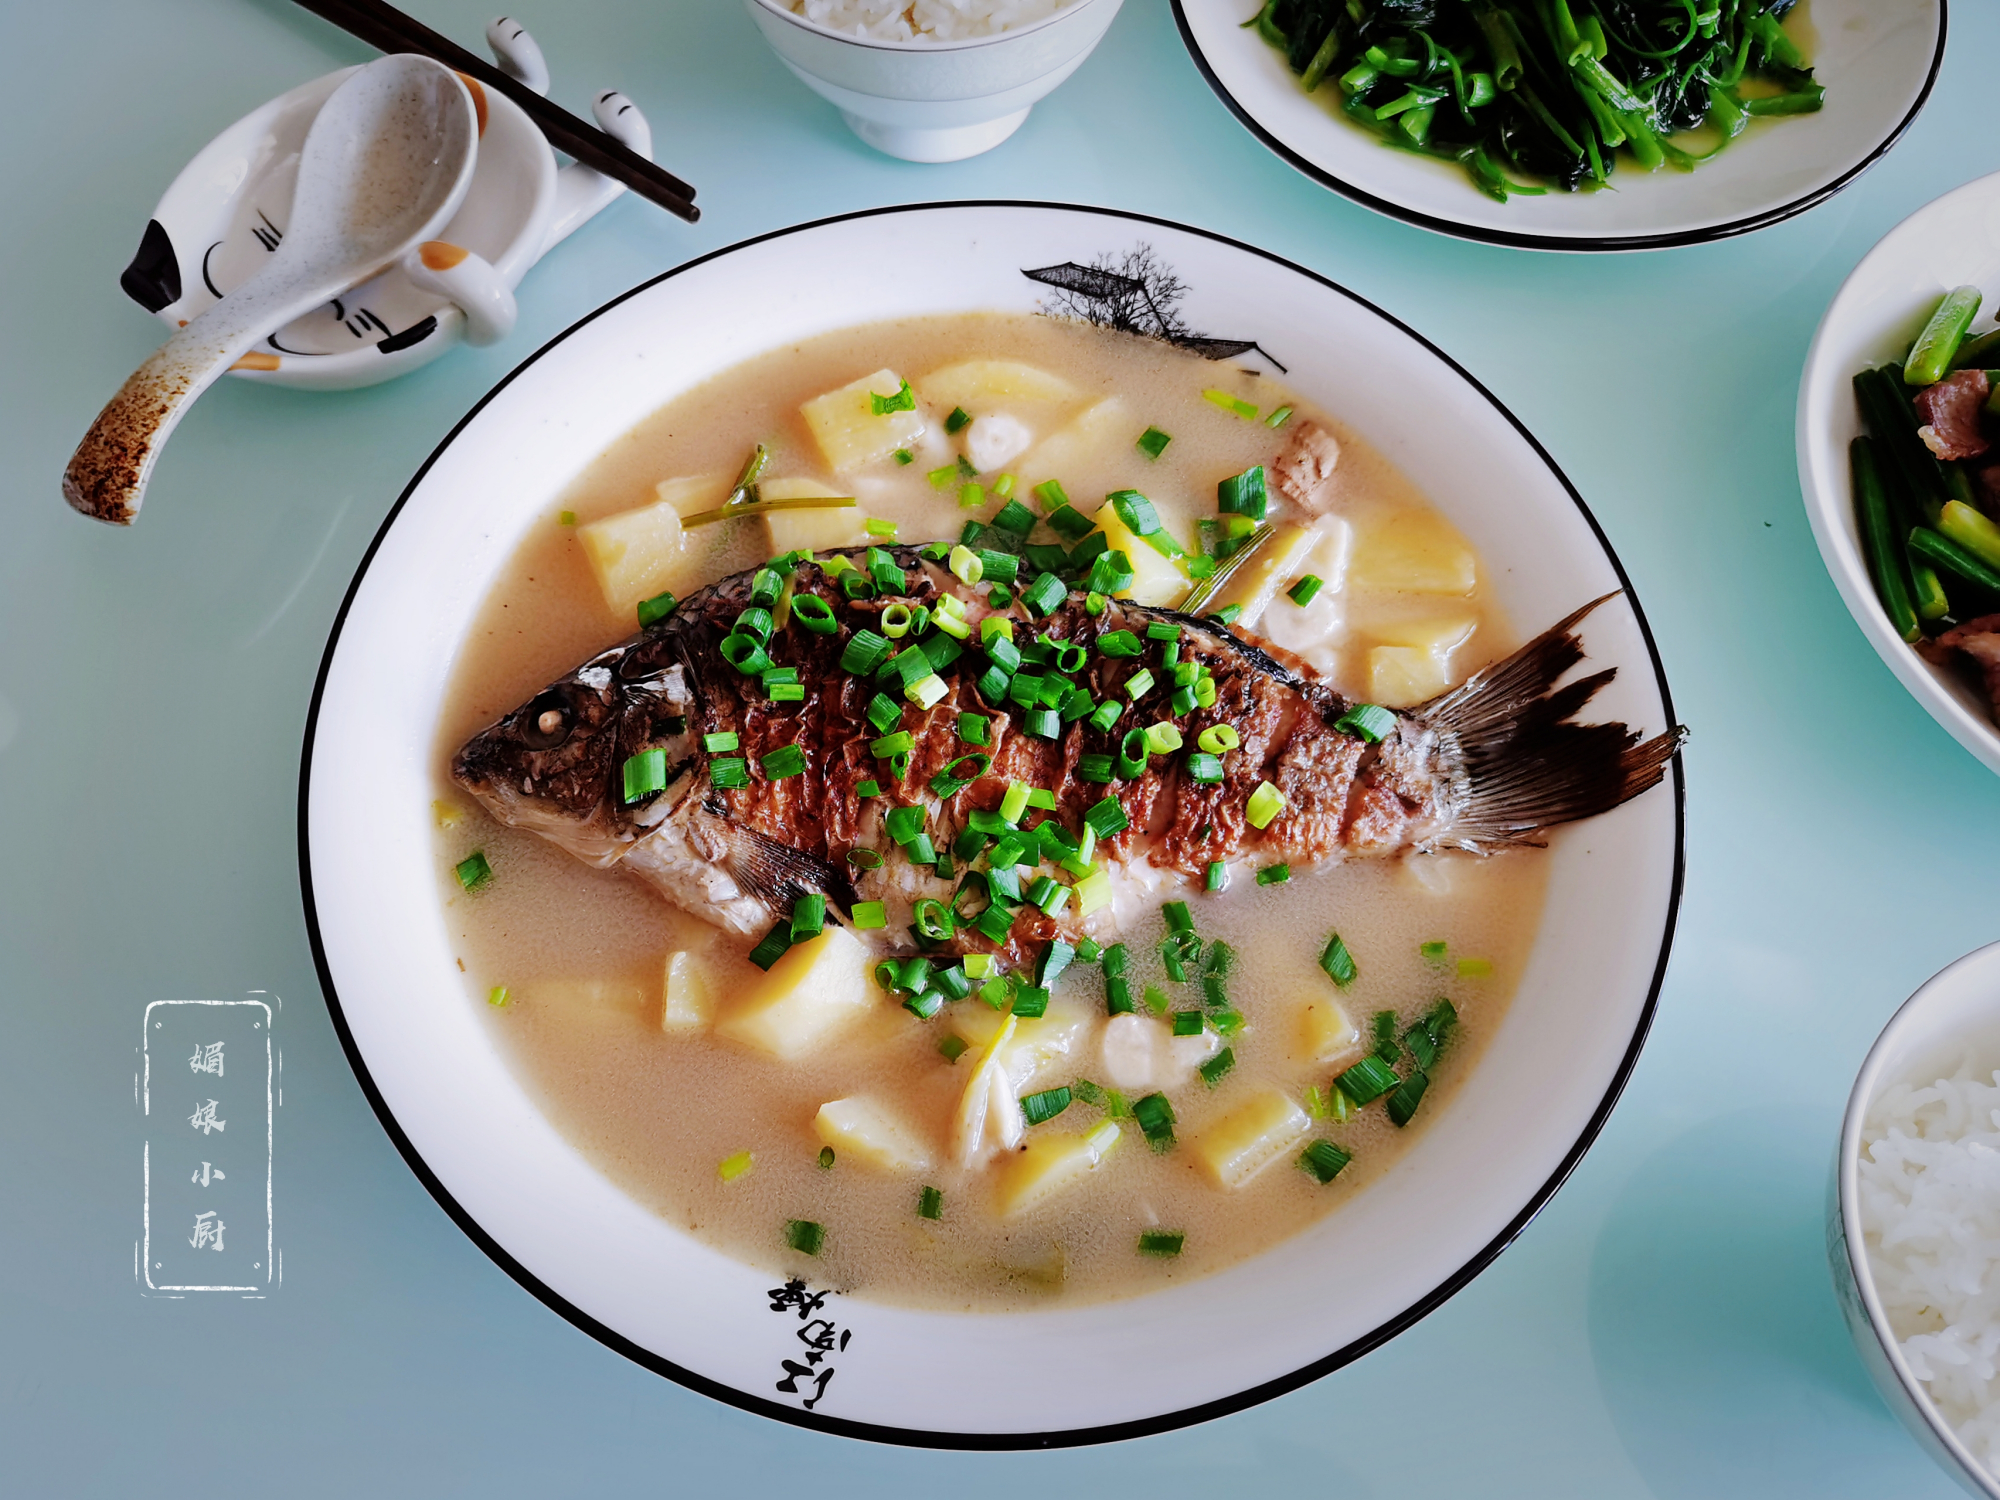 鲫鱼炖土豆很多人没吃过,鱼肉鲜嫩汤水鲜美,味道不输鲫鱼炖豆腐